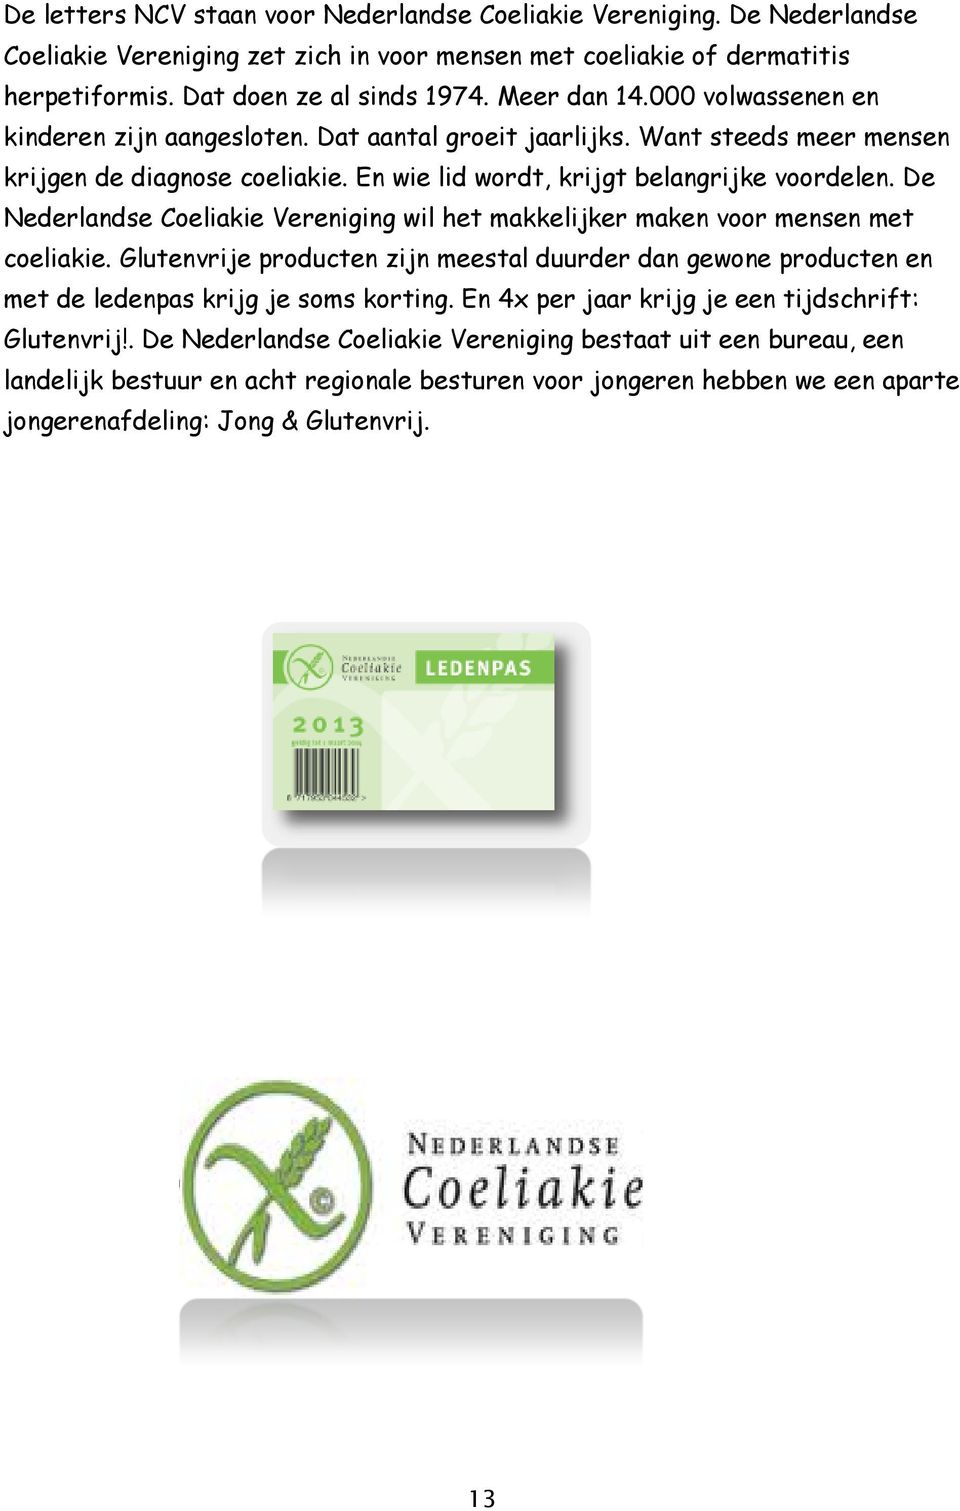 De Nederlandse Coeliakie Vereniging wil het makkelijker maken voor mensen met coeliakie. Glutenvrije producten zijn meestal duurder dan gewone producten en met de ledenpas krijg je soms korting.